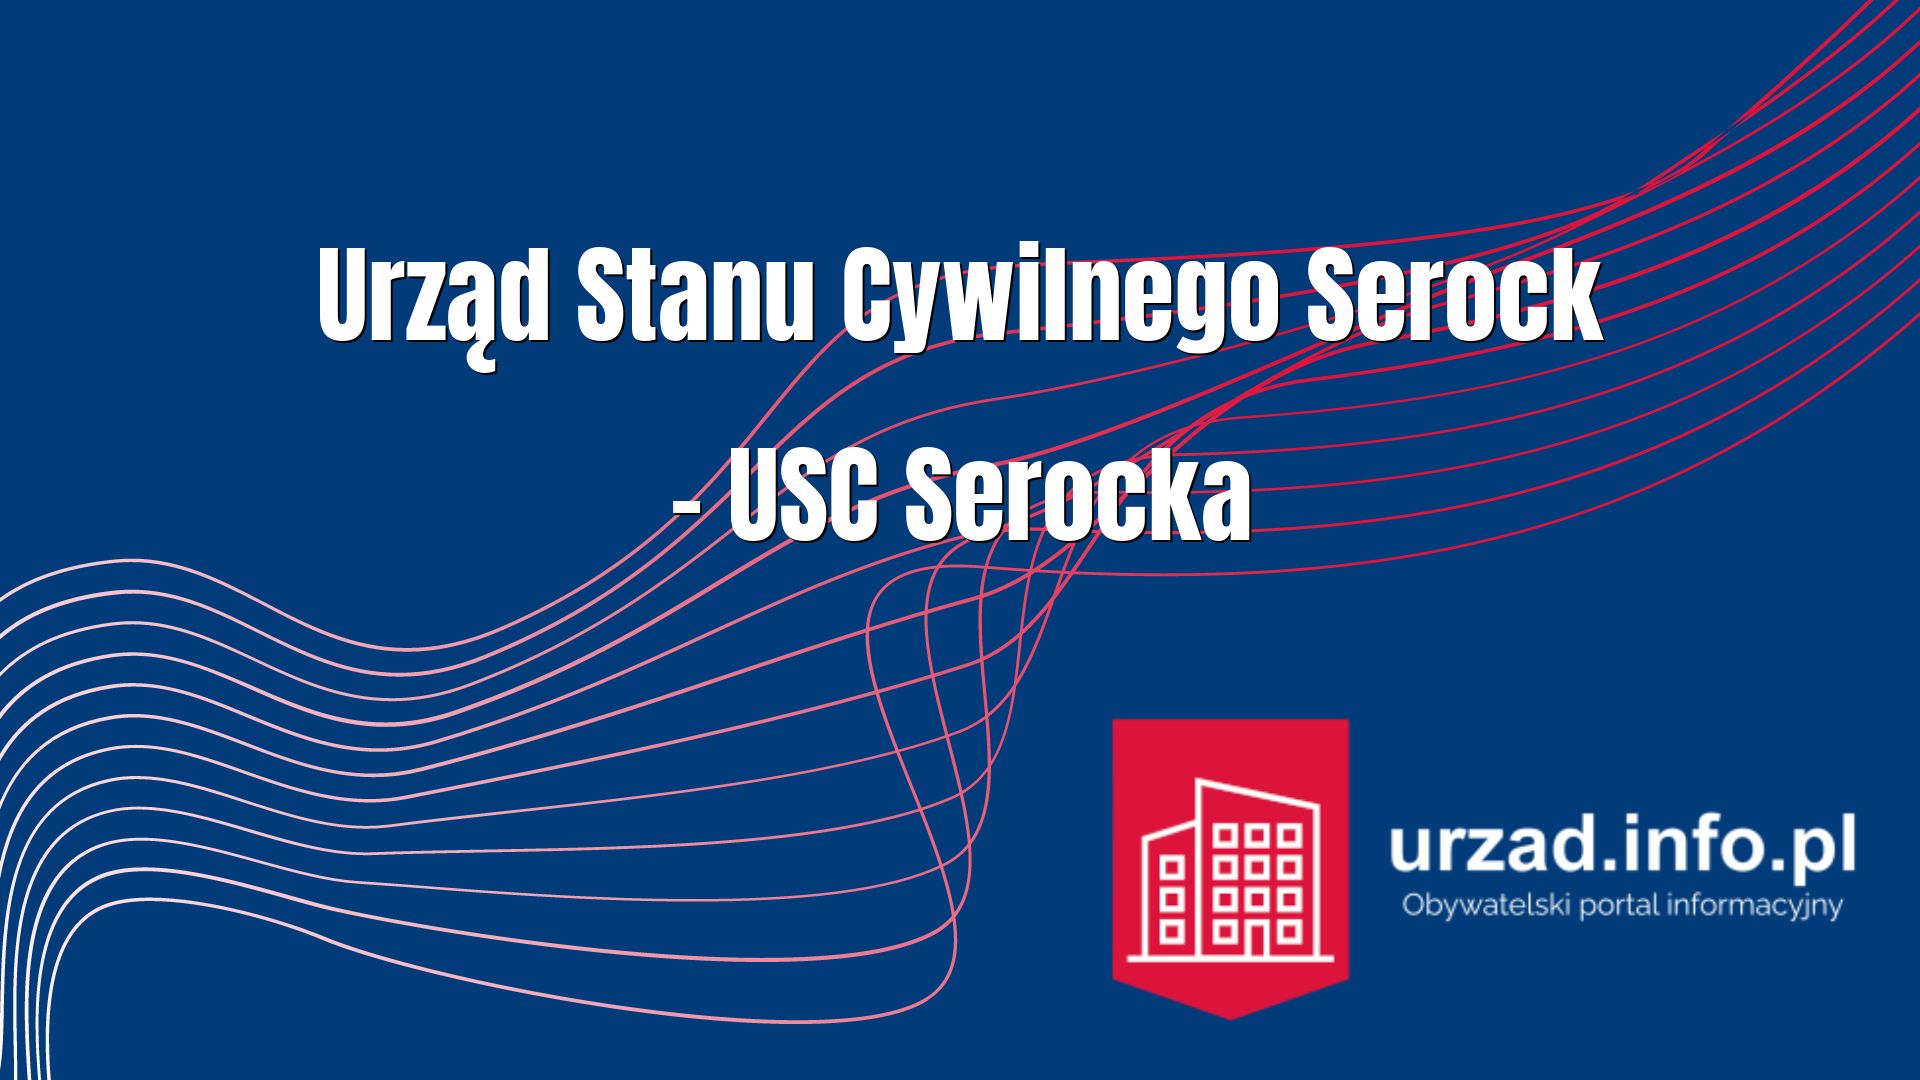 Urząd Stanu Cywilnego Serock – USC Serocka